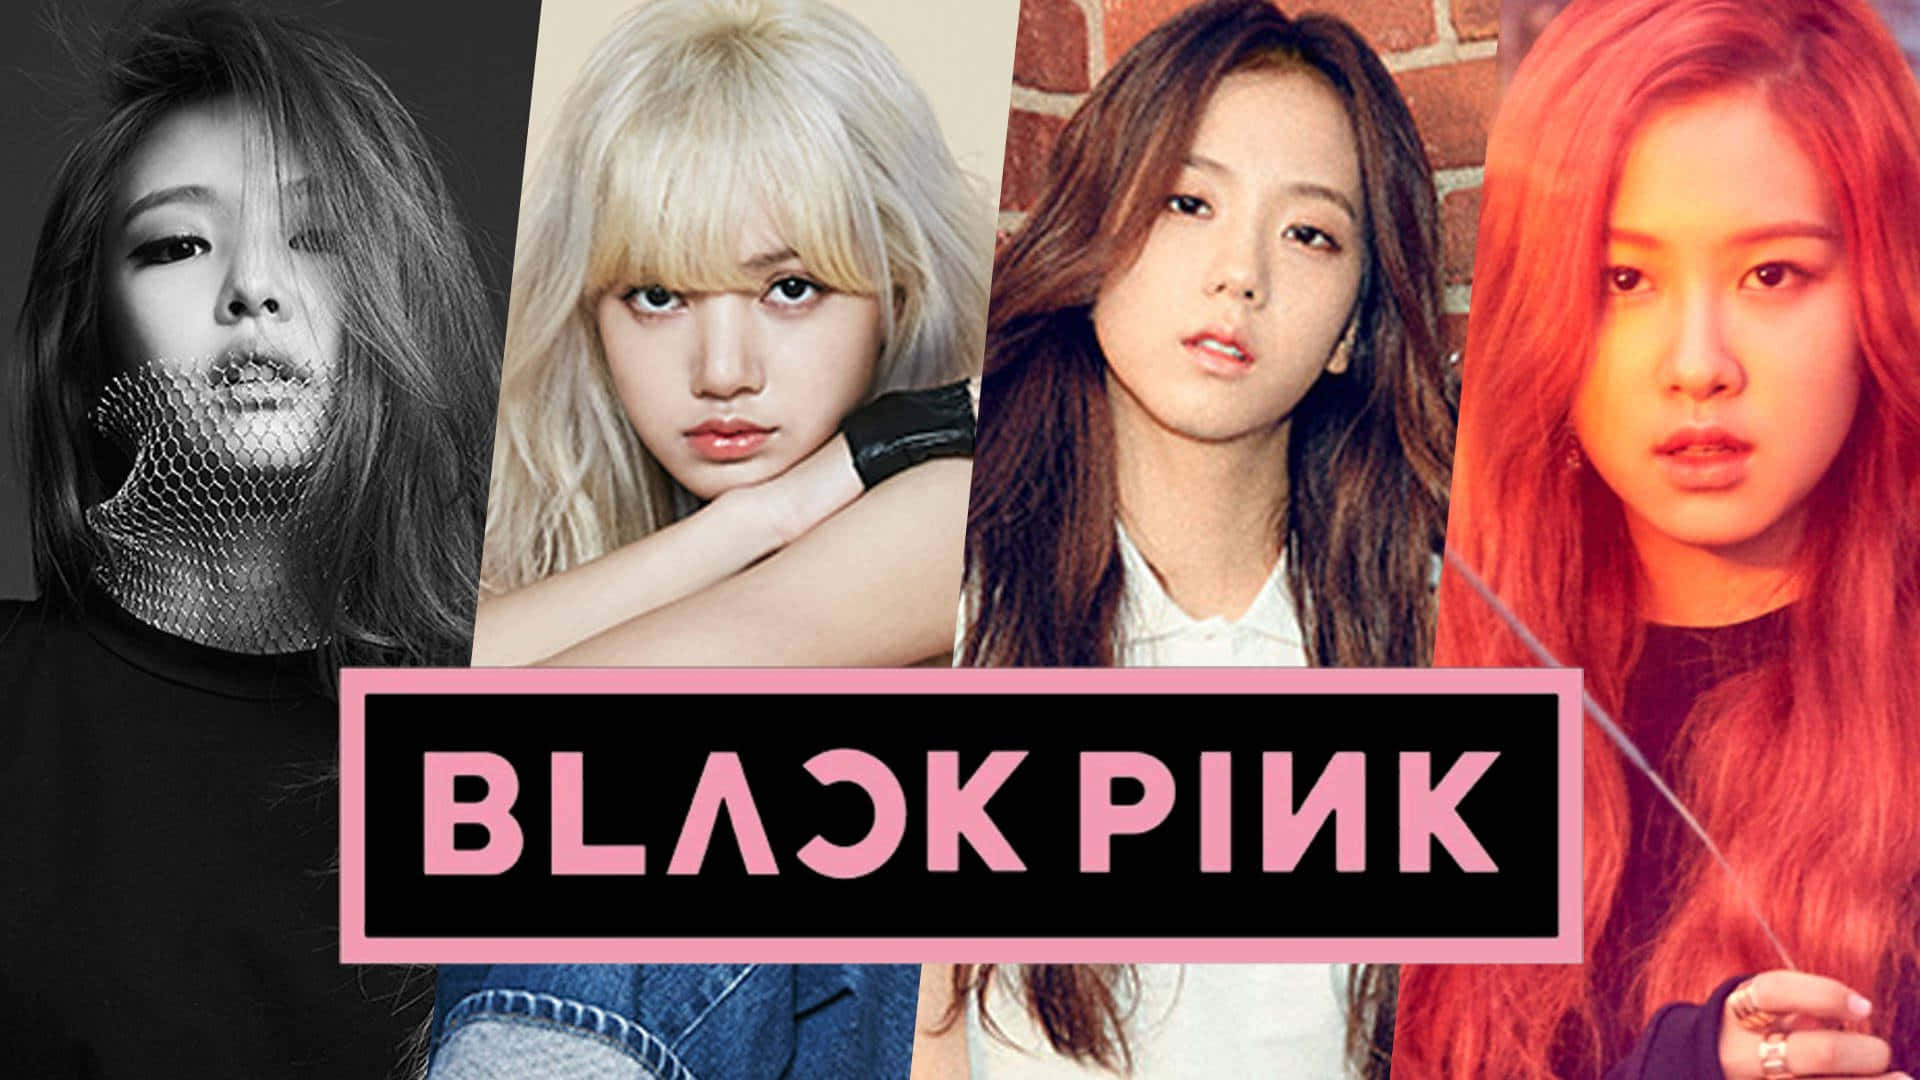 Ilgruppo Di Ragazze K-pop Blackpink Fa Una Dichiarazione Potente Con Il Loro Stile Carismatico.